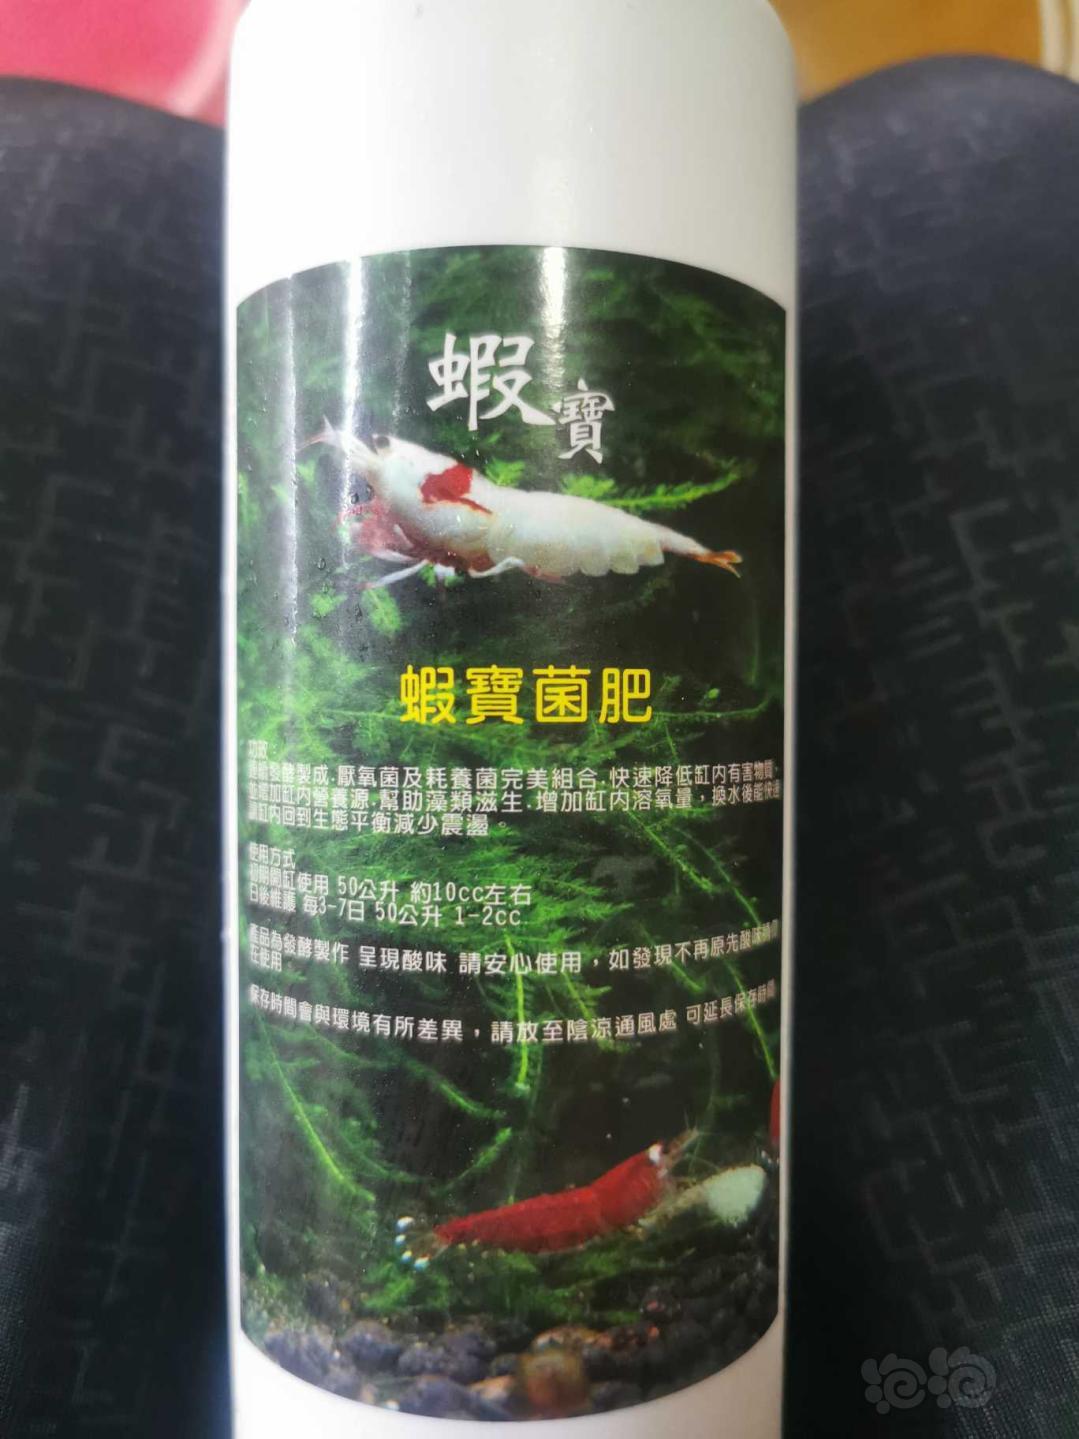 非常给力的台湾养虾产品。森林叔叔虾五宝-图2